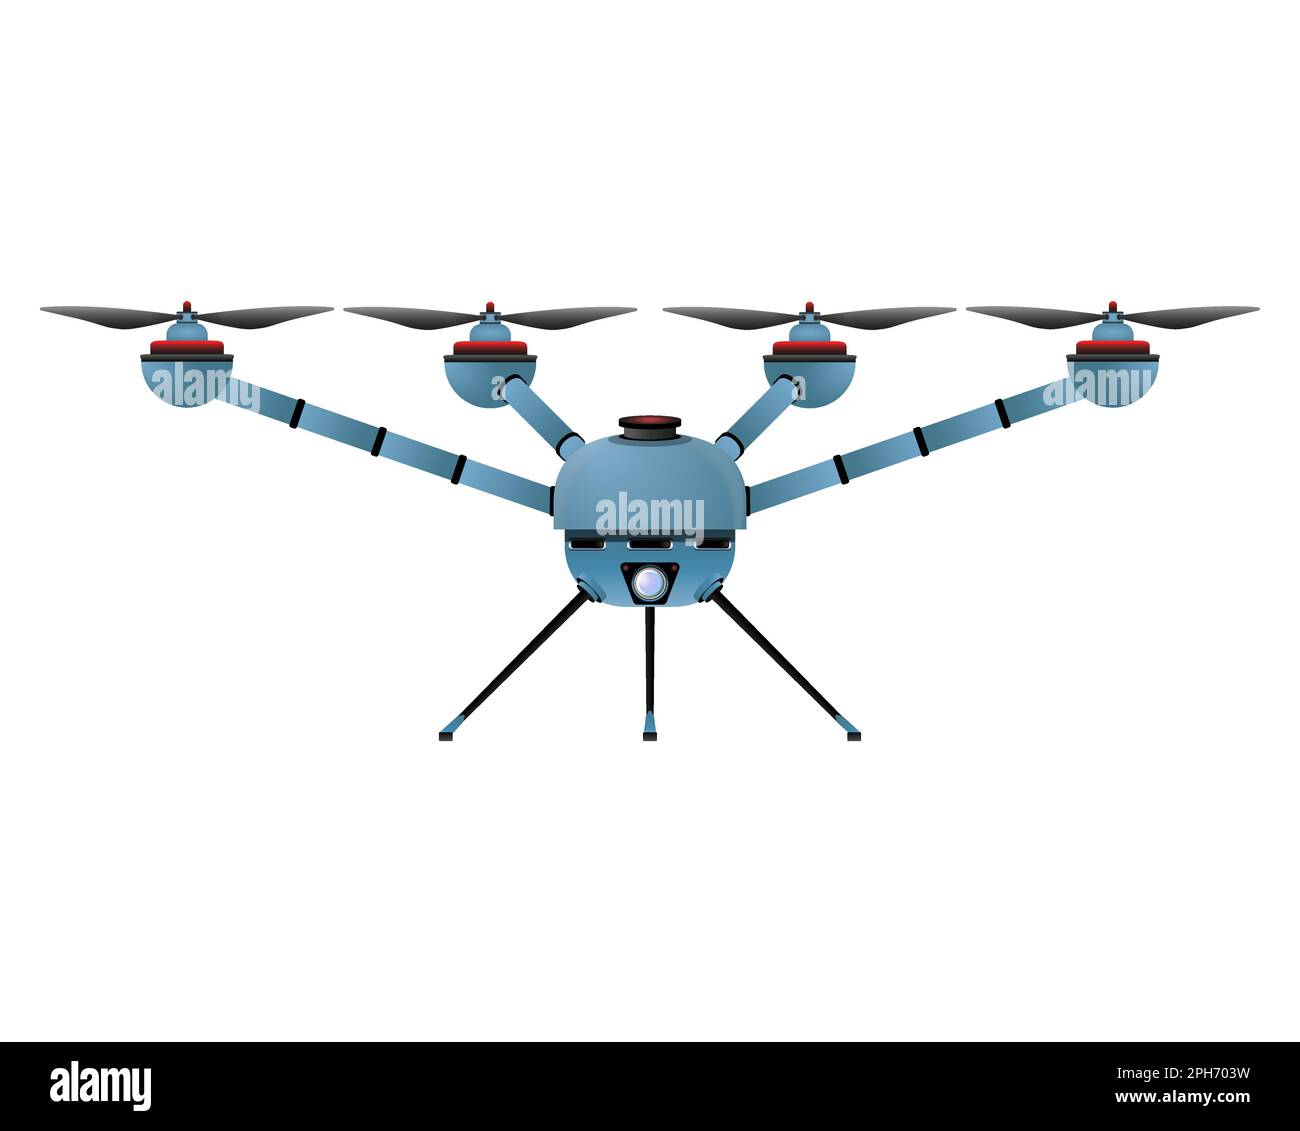 Quadricottero in stile realistico. Drone blu con fotocamera. Illustrazione vettoriale colorata isolata su sfondo bianco. Illustrazione Vettoriale